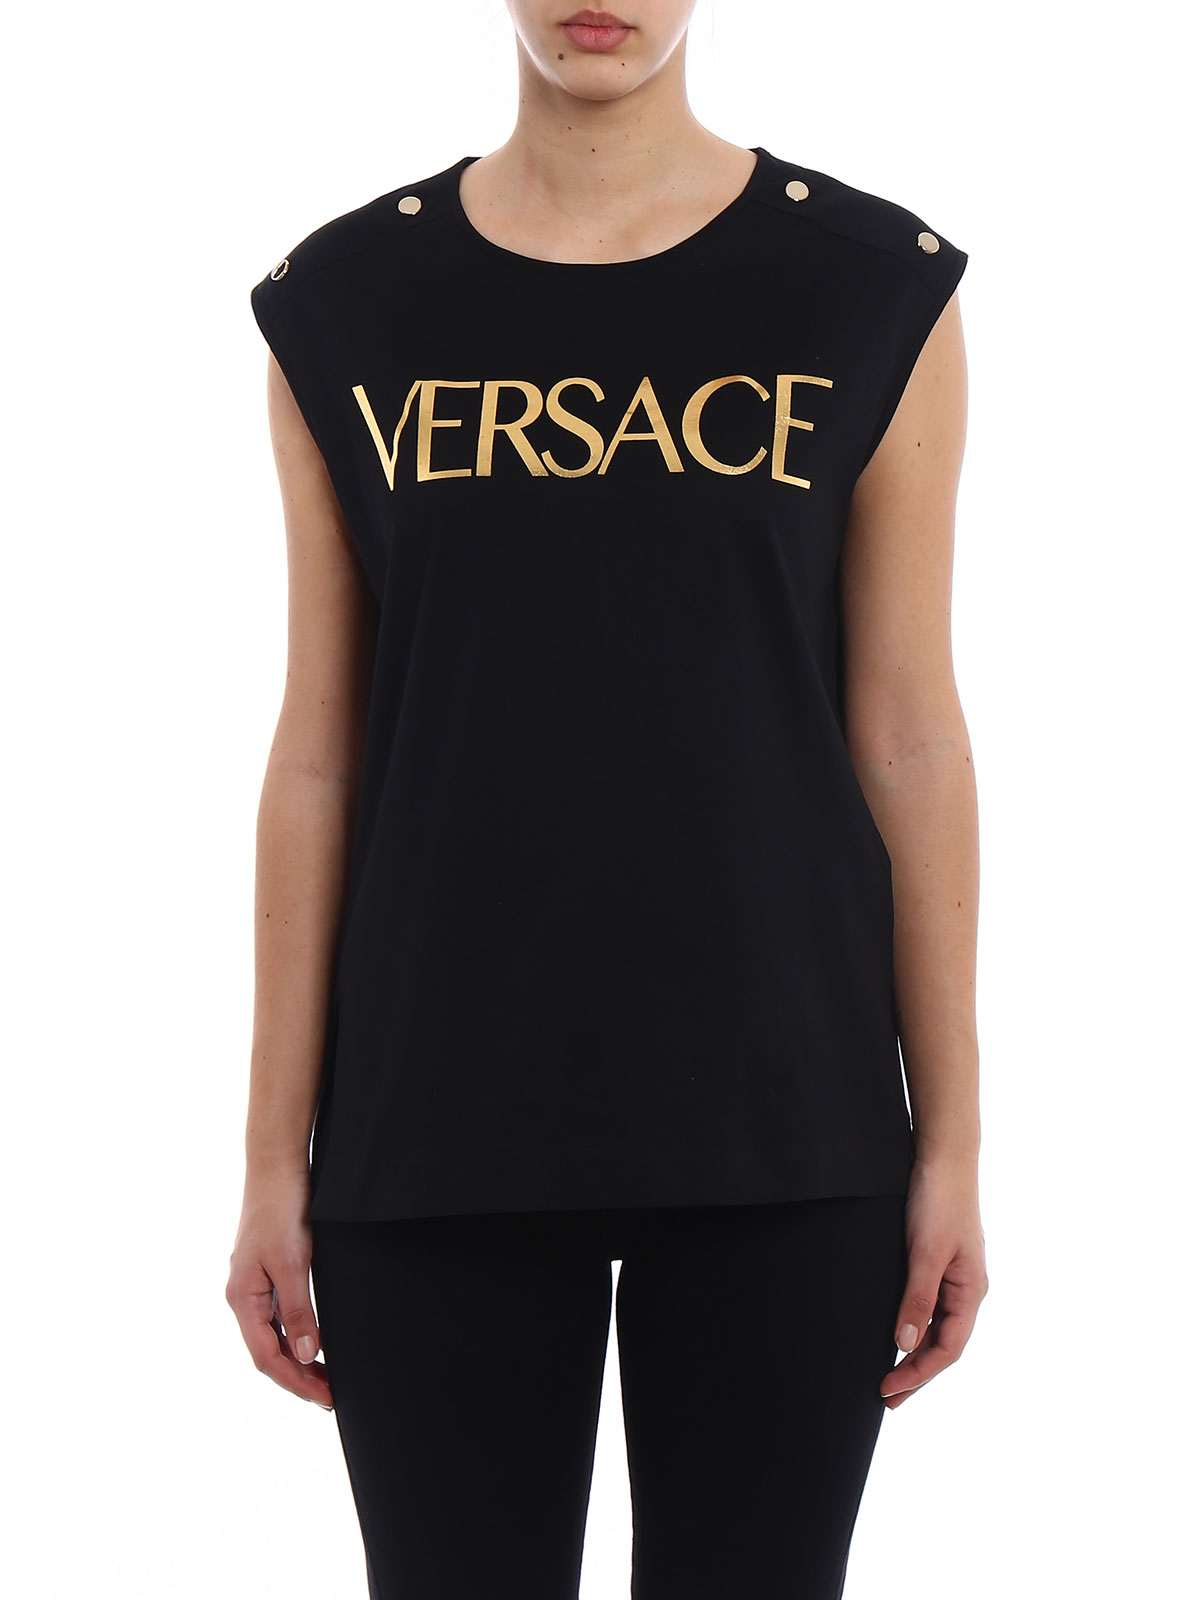 versace top womens